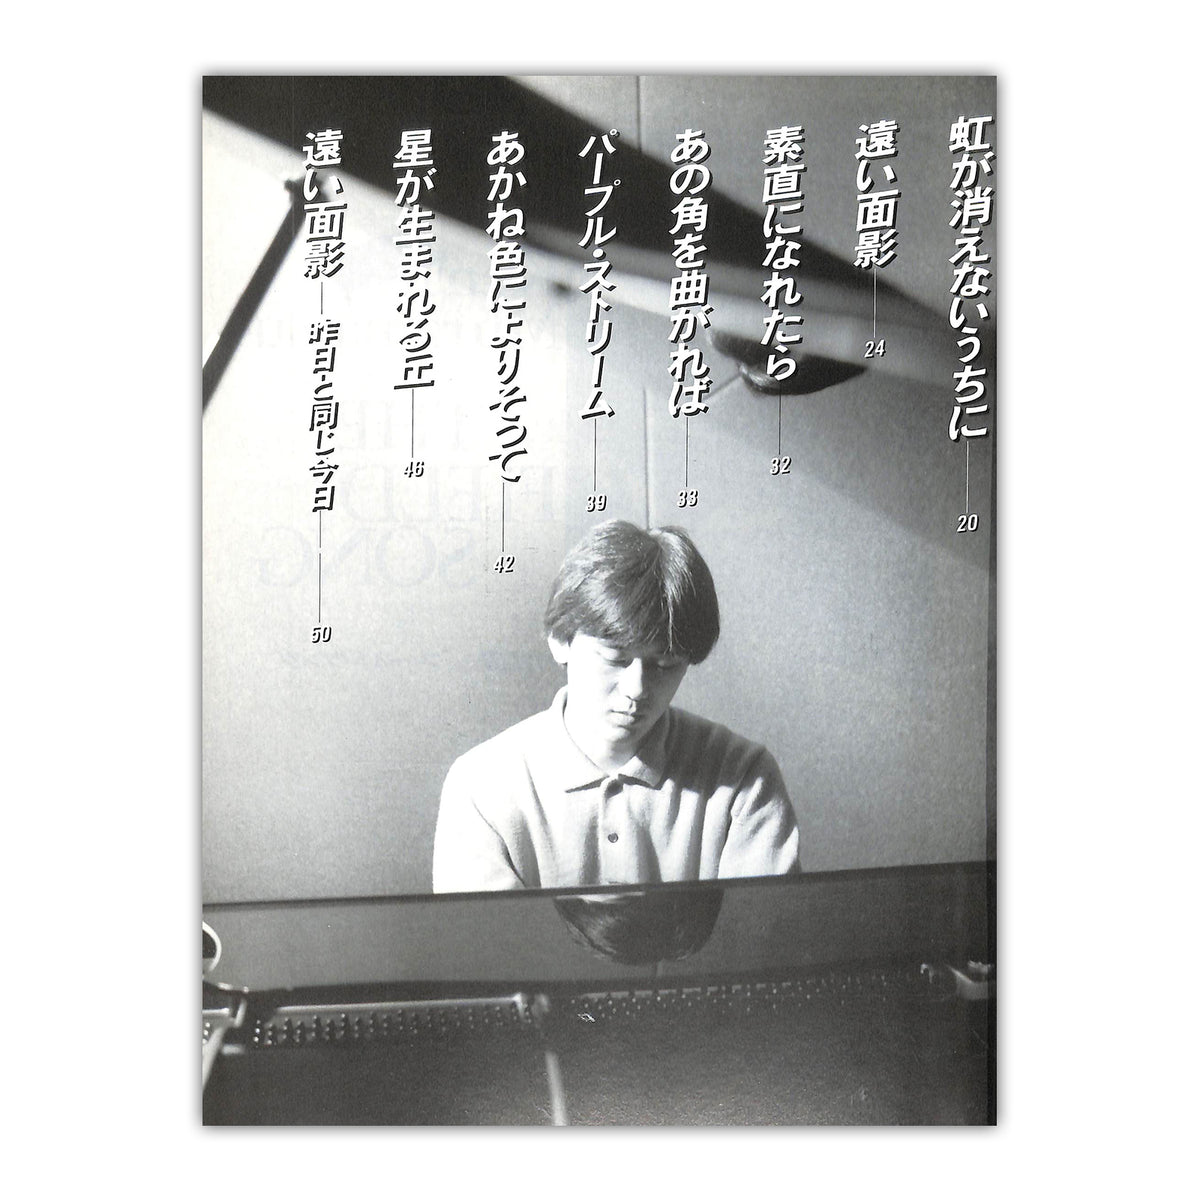 ◆ピアノソロ◆村松健 / フィールド・ソング 10thアルバム全11曲収録 [楽譜]